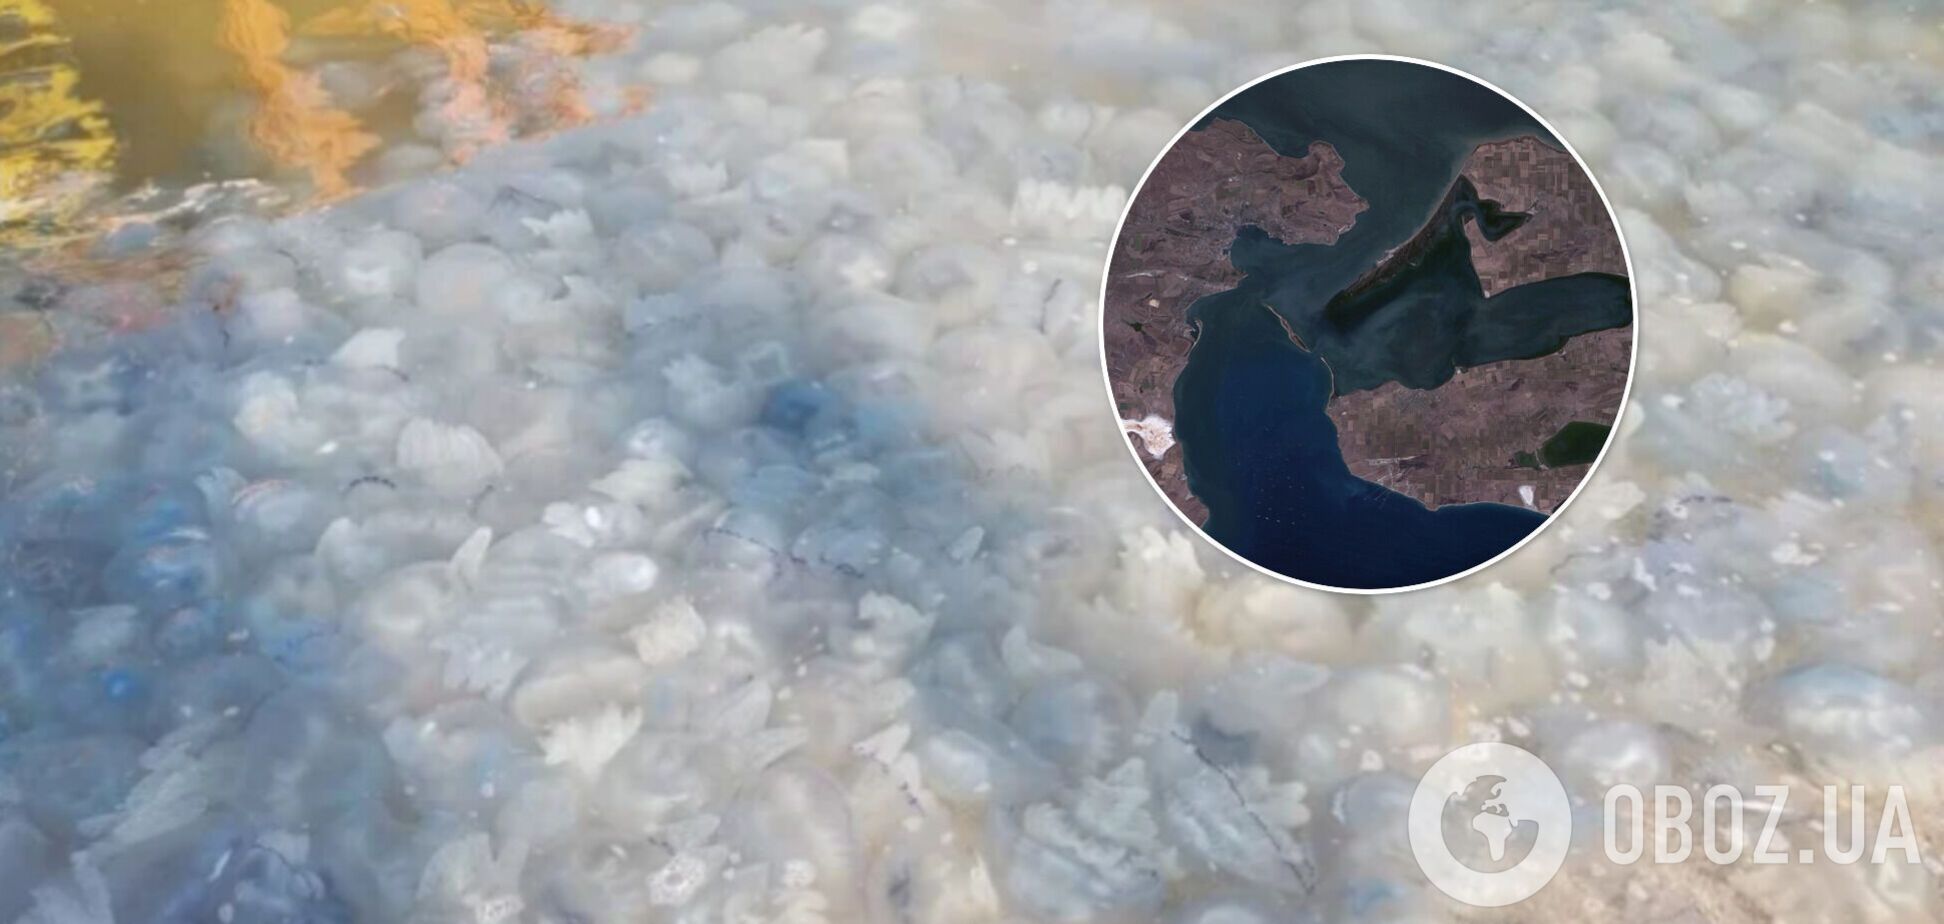 Азовское море превратилось в желе из медуз: в чем опасность и как Россия ухудшает ситуацию